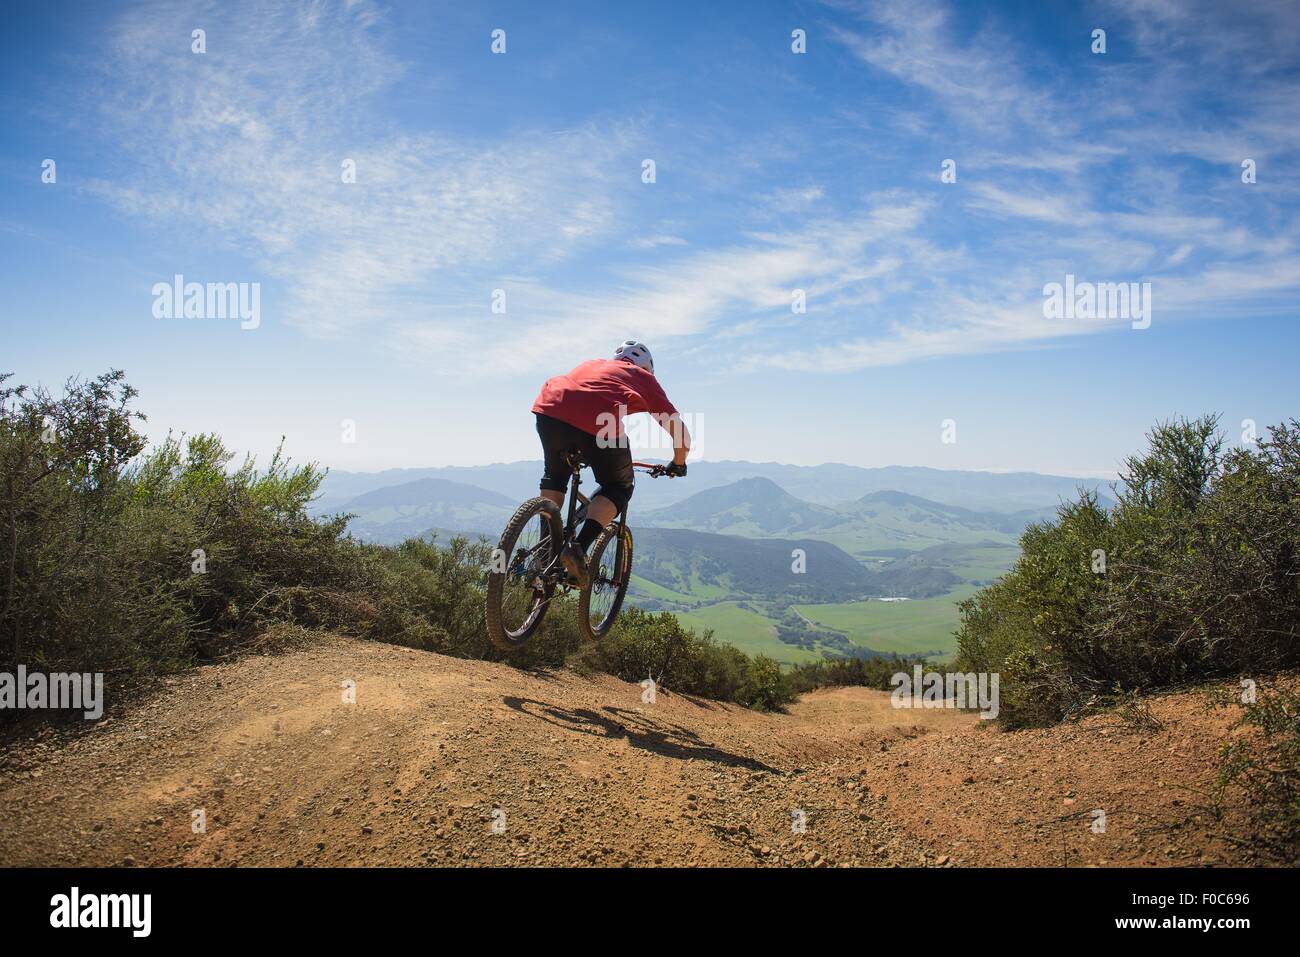 Cyclist mountain biking, San Luis Obispo, California, United States of America Stock Photo